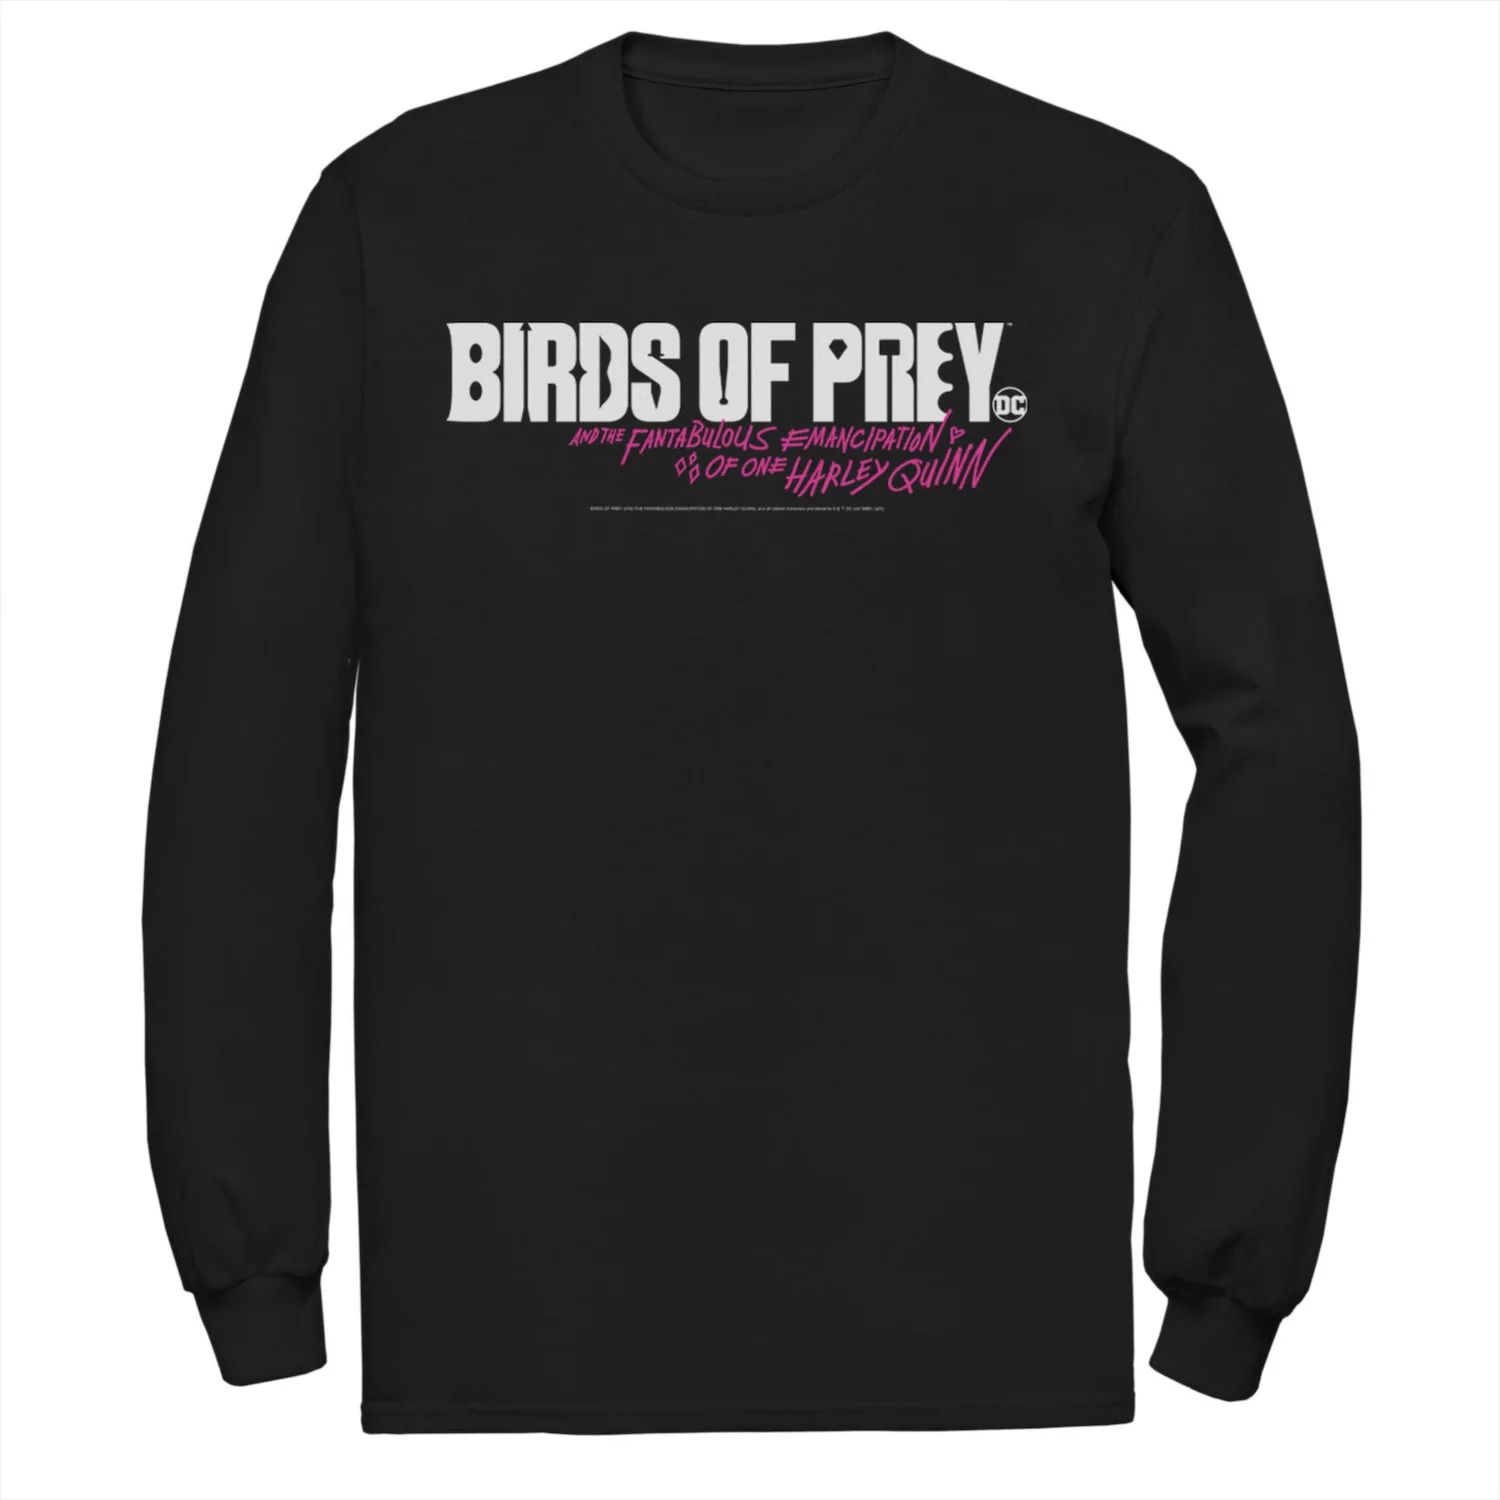 Мужская футболка с простым текстовым логотипом «Хищные птицы» DC Comics приор групп наклейка патч для одежды dc хищные птицы – 1